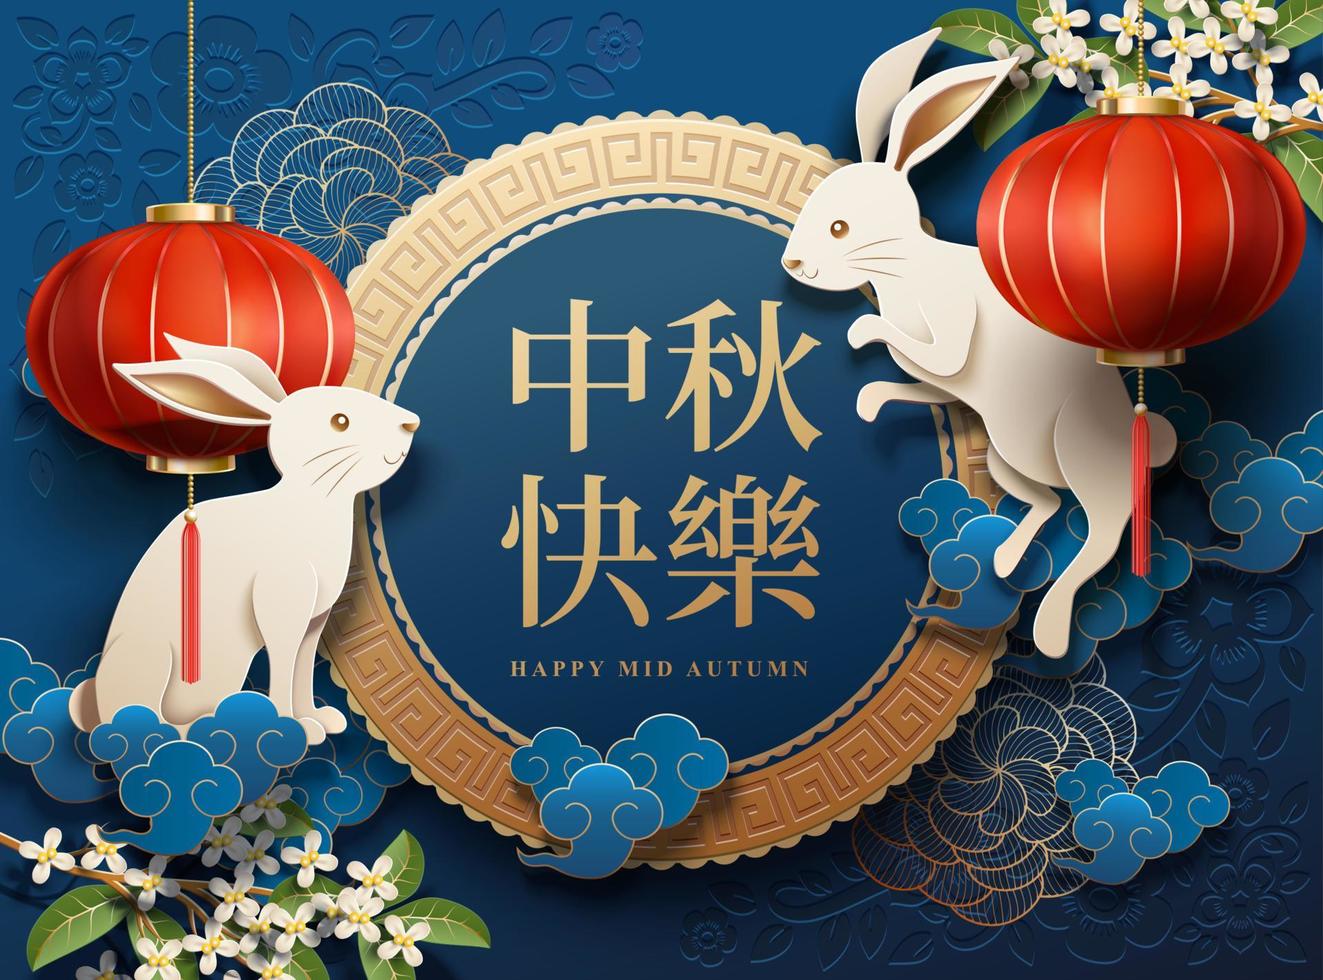 contento medio autunno Festival design con bianca coniglio e lanterne elementi su blu sfondo, vacanza nome scritto nel Cinese parole vettore